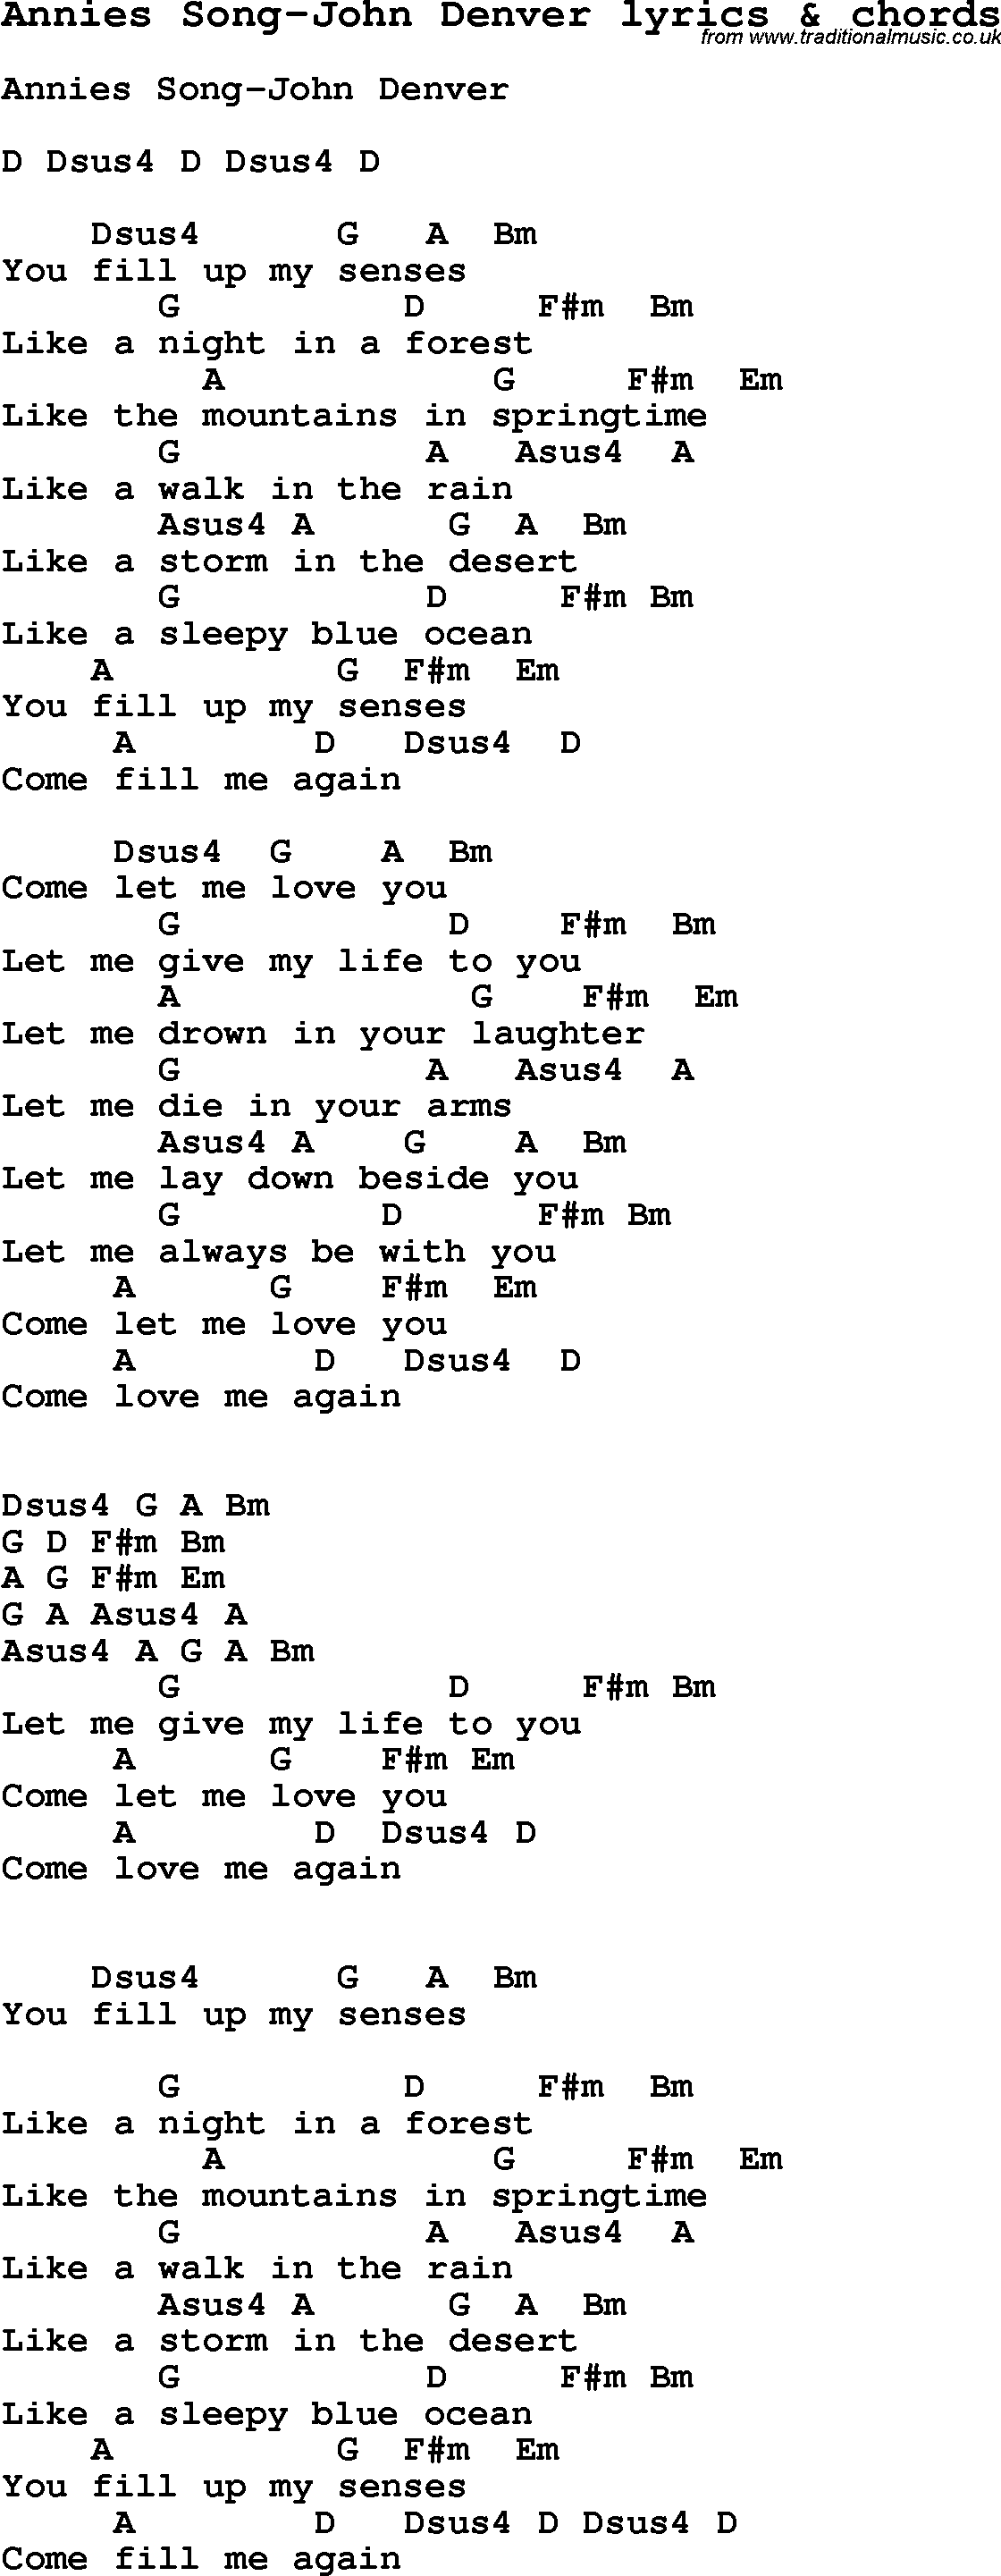 Love Song Lyrics for: Annies Song-John Denver with chords for Ukulele, Guitar Banjo etc.